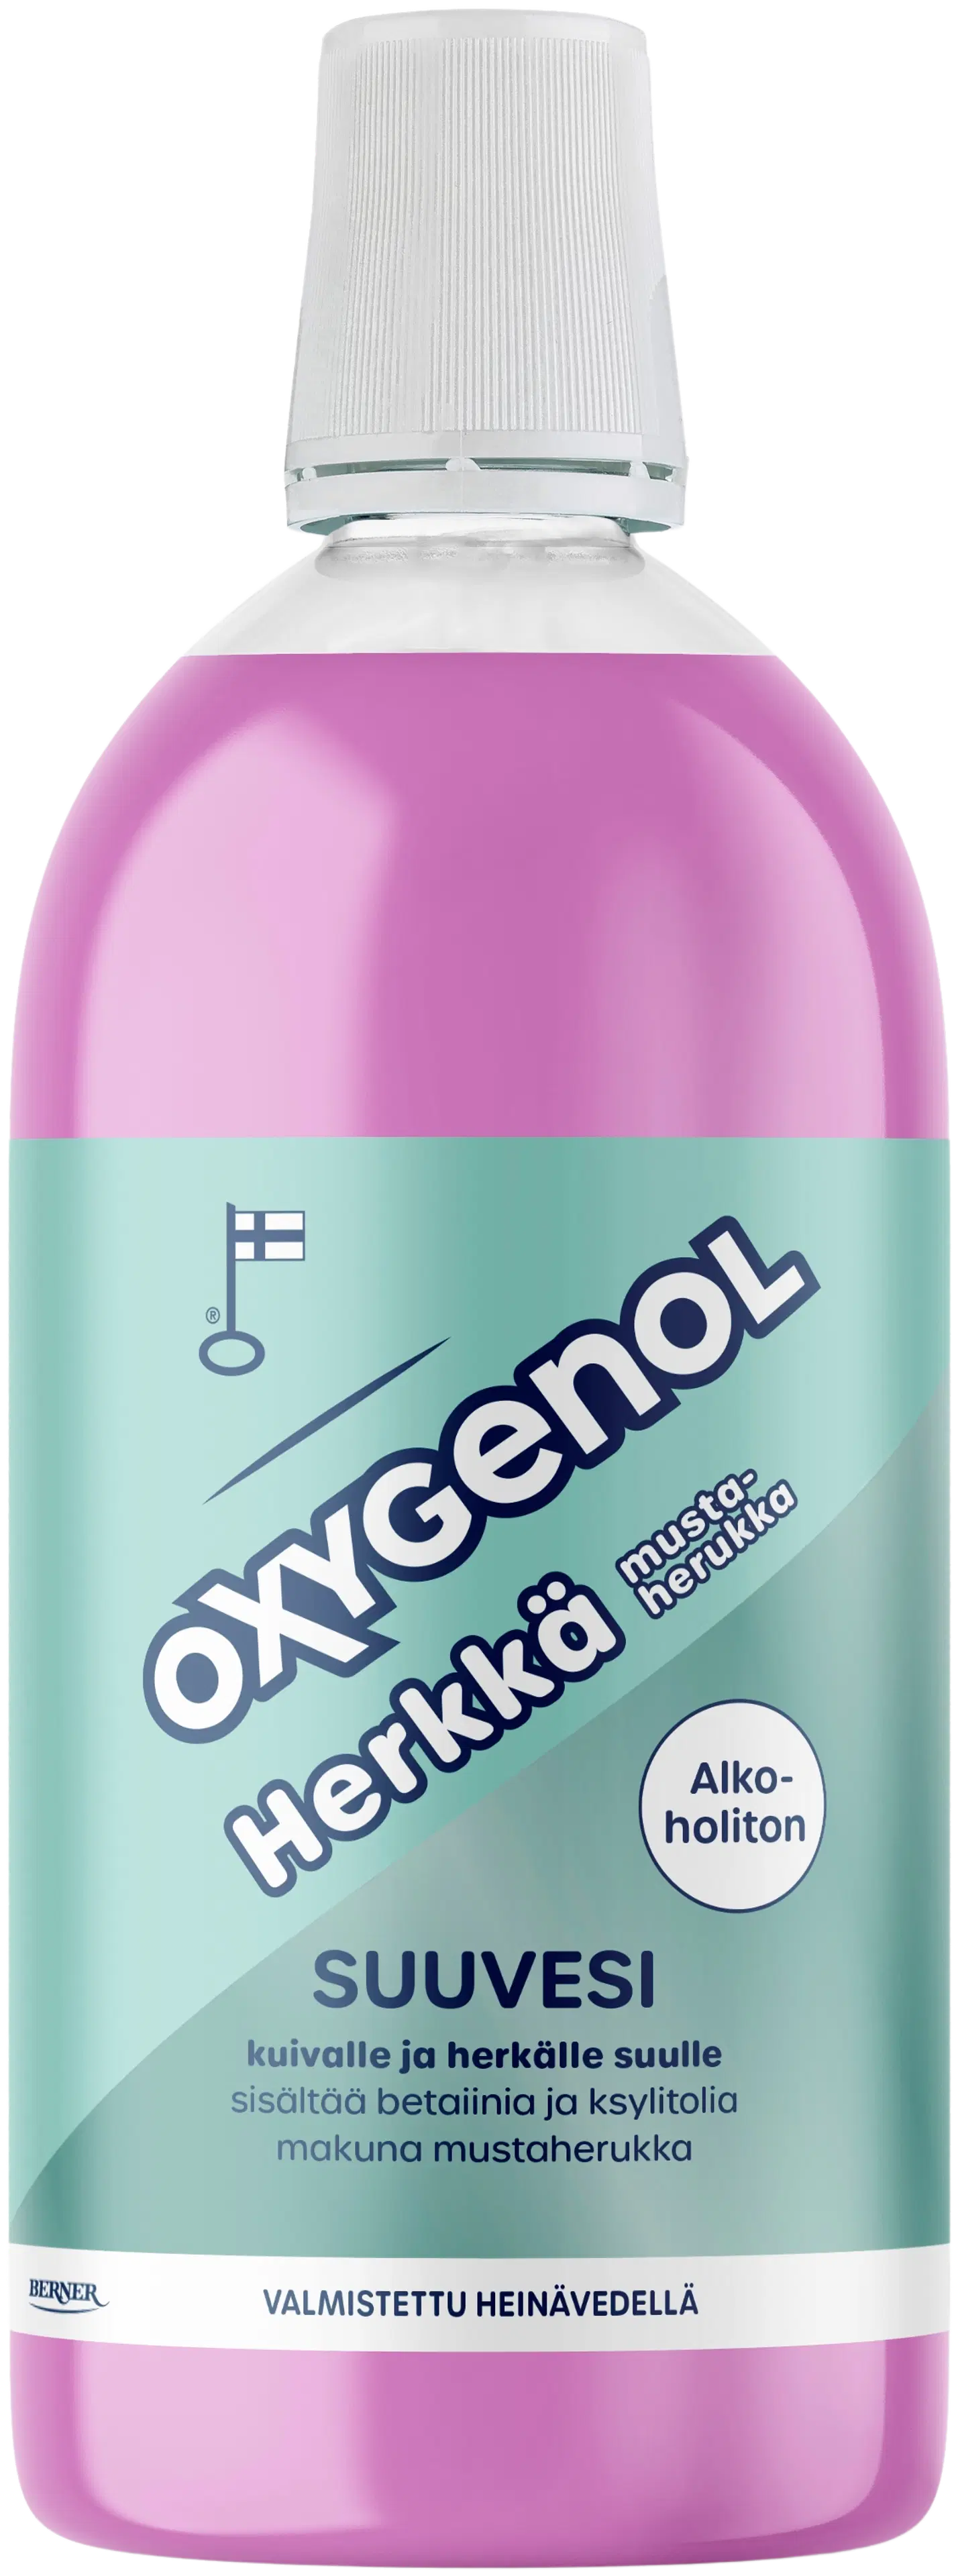 Oxygenol 500ml Herkkä suuvesi